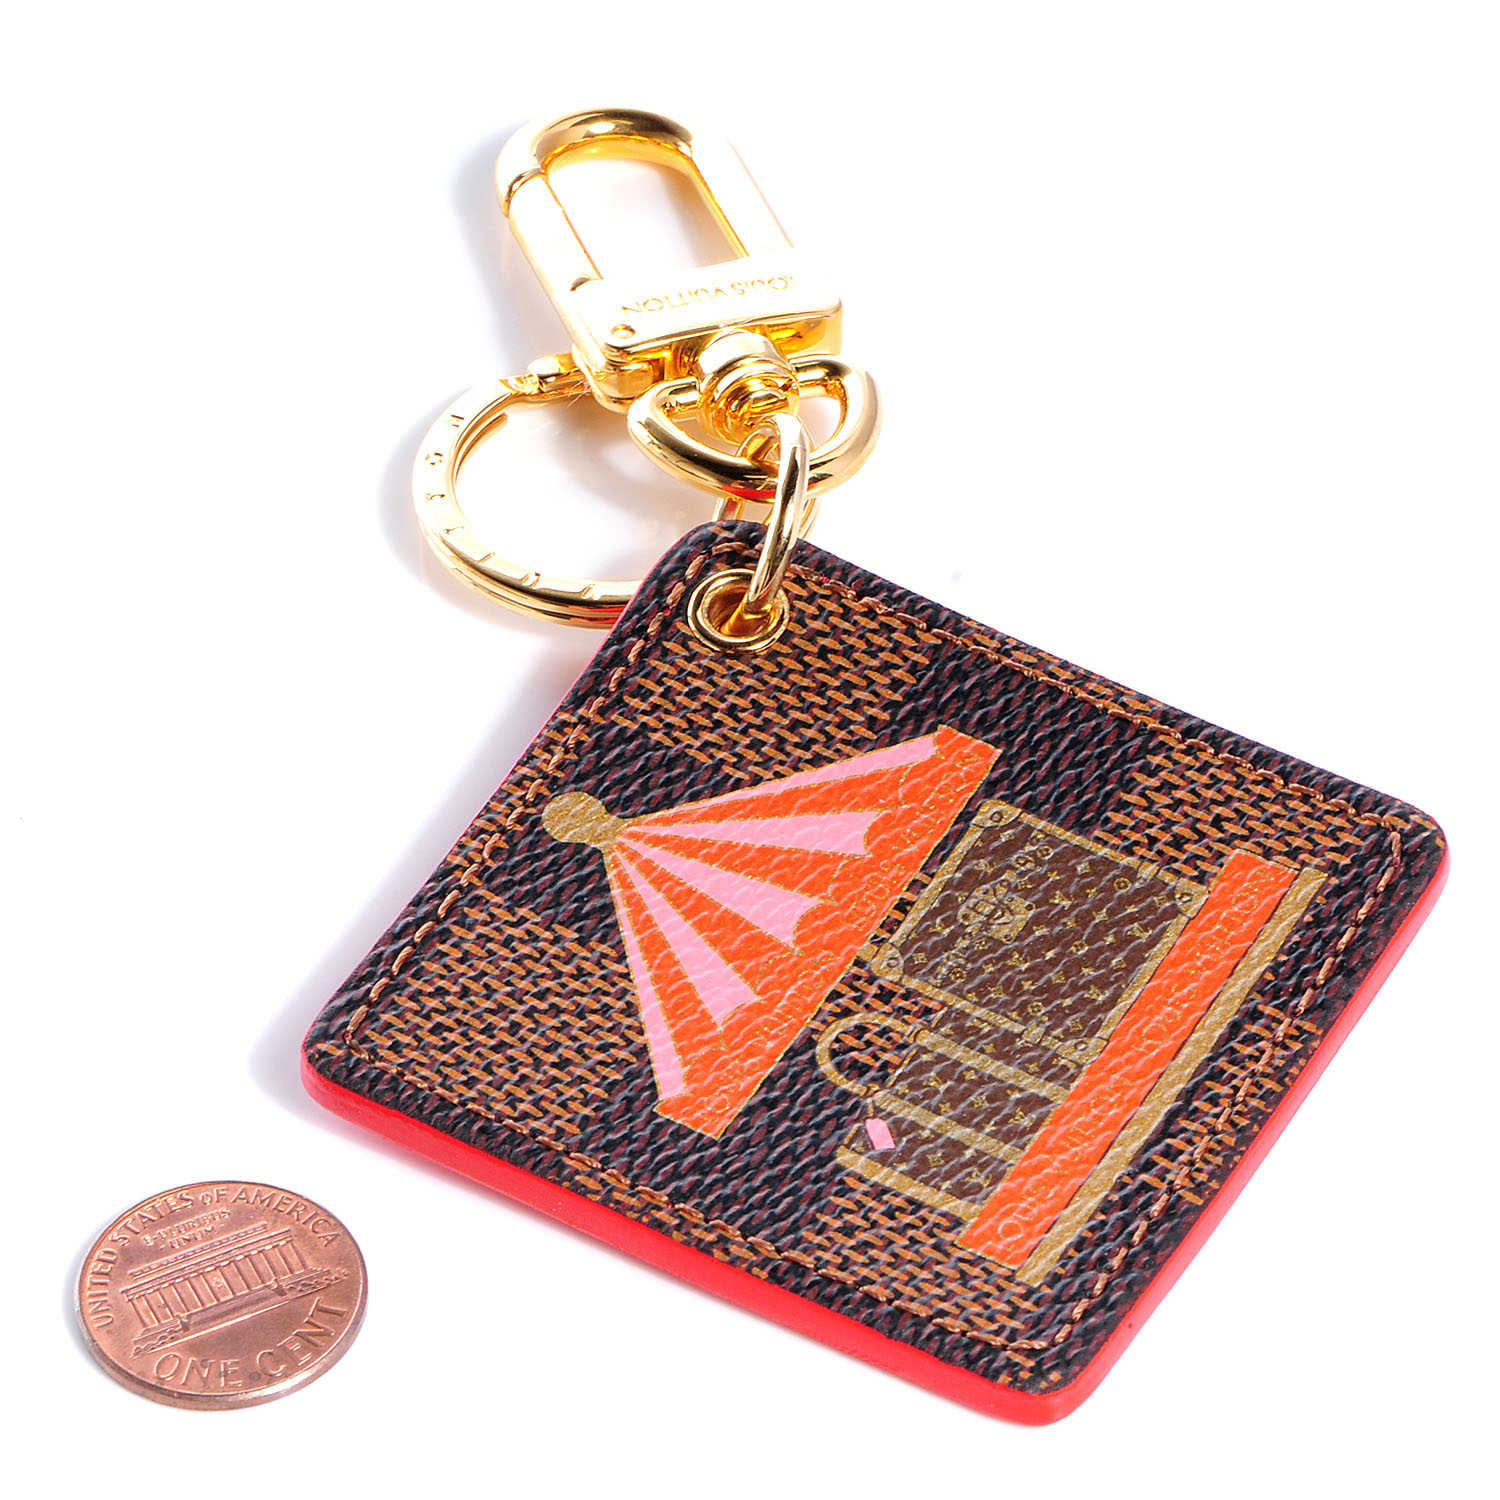 LOUIS VUITTON Damier Ebene Illustre Carousel Bag Charm Key Ring Red 72072